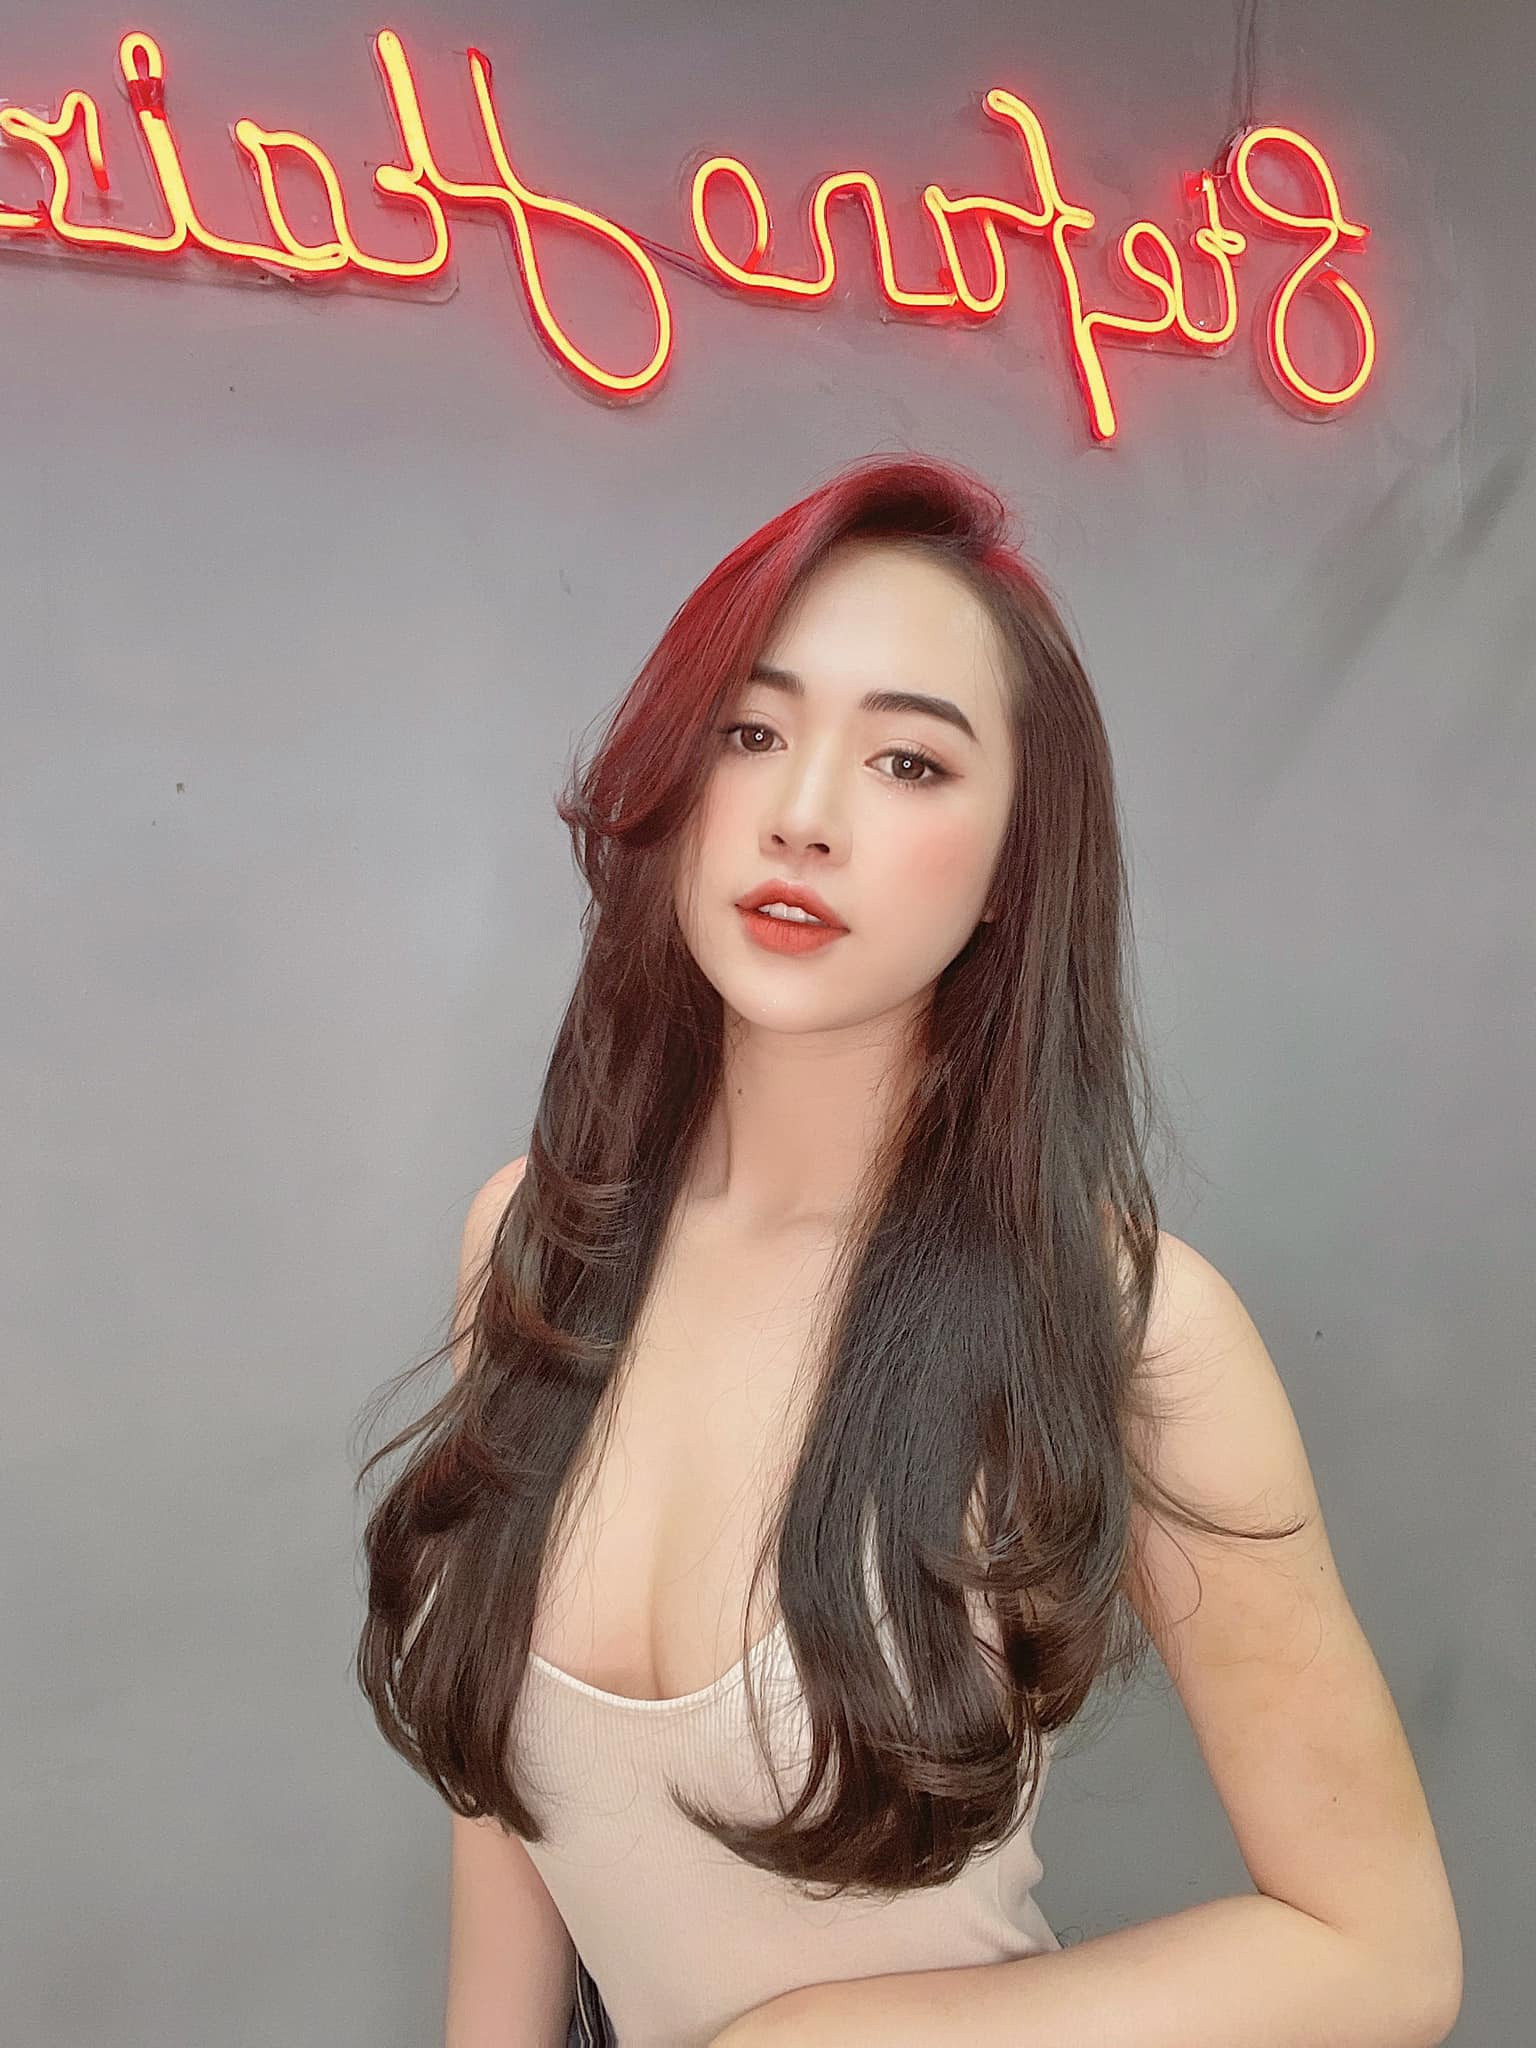 Hot girl Quảng Ninh đốt mắt người nhìn với những khoảnh khắc nóng bỏng - 11